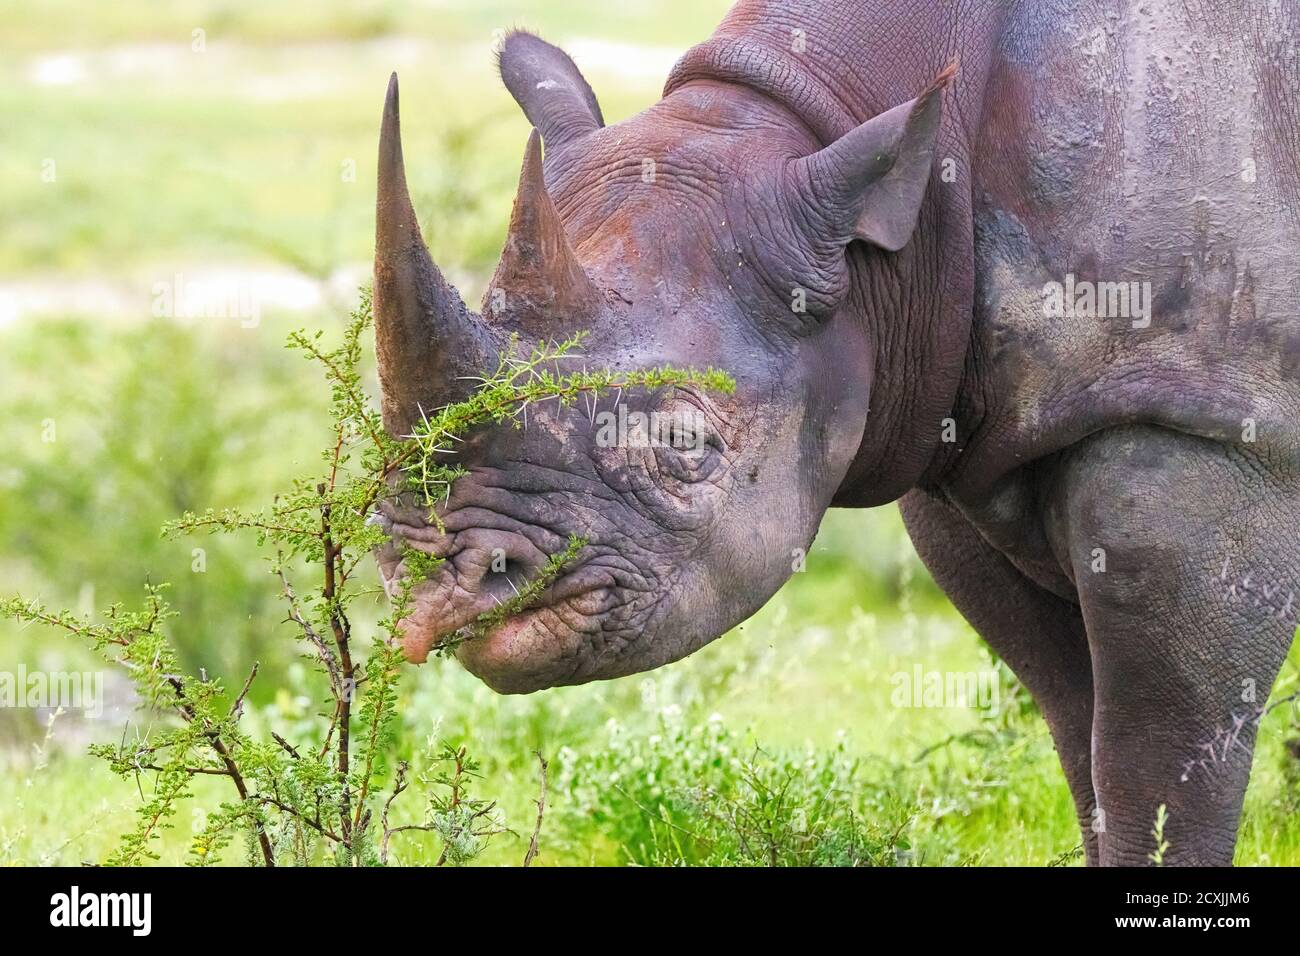 Black rhinoceros or hook-lipped rhinoceros, Diceros bicornis, close up of  the face, endangered animal. Etosha National Park, Namibia Stock Photo -  Alamy